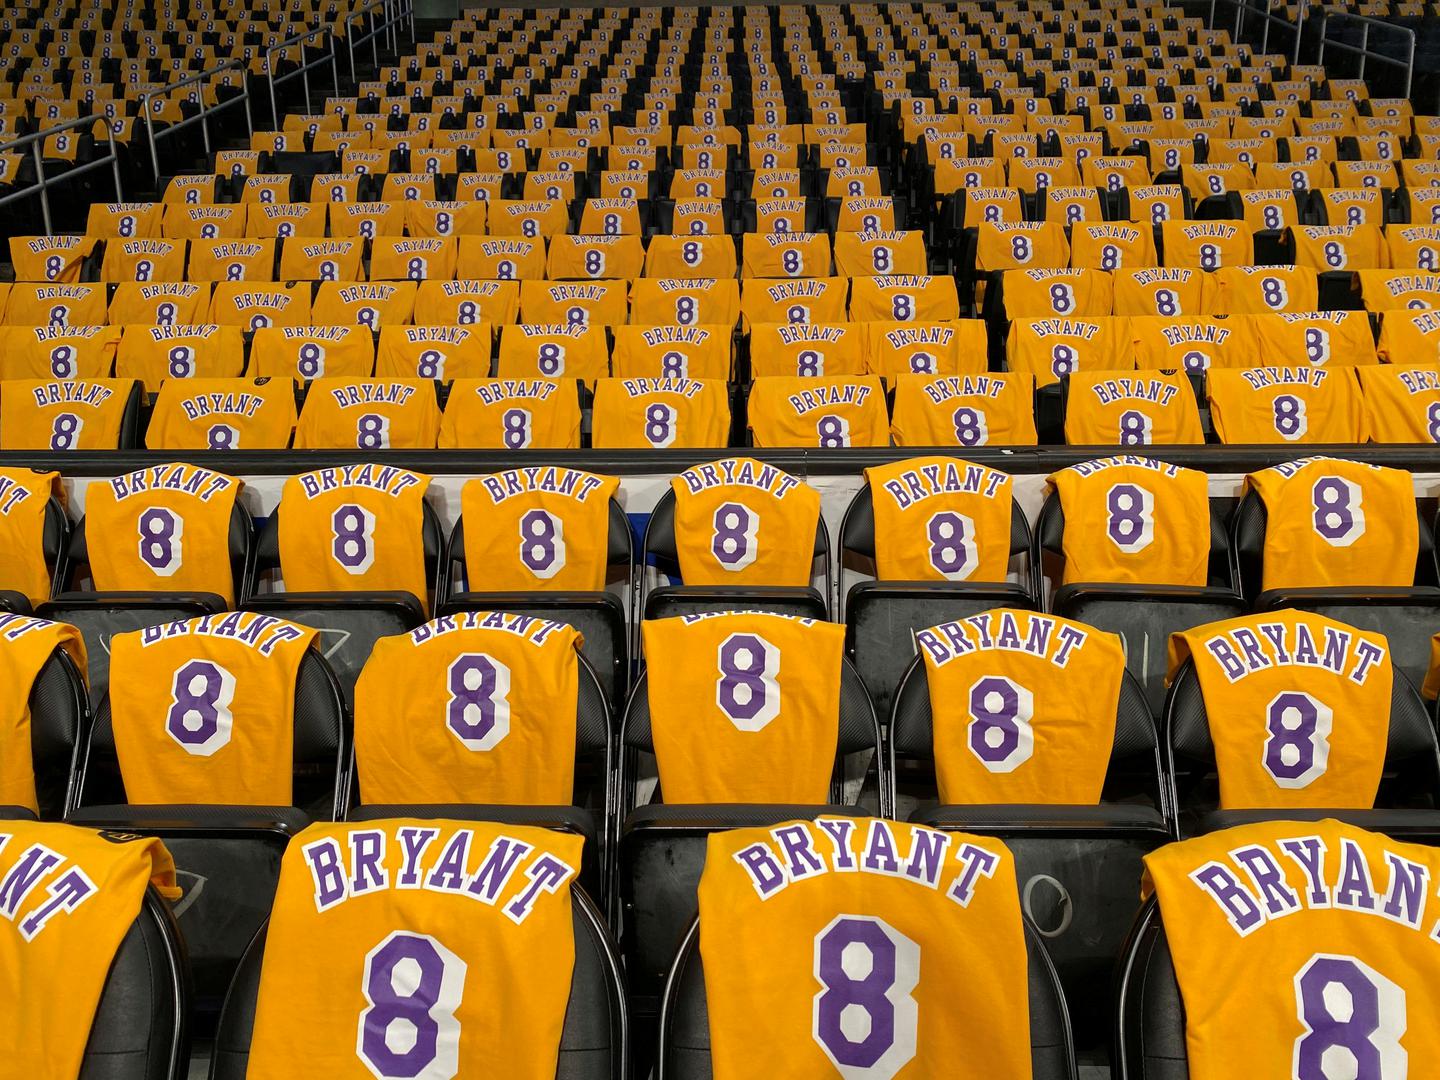 Staples Centar ispunjen dresovima prerano i tragično preminulog Kobeja Bryanta, legende NBA-a i LA Lakersa.

